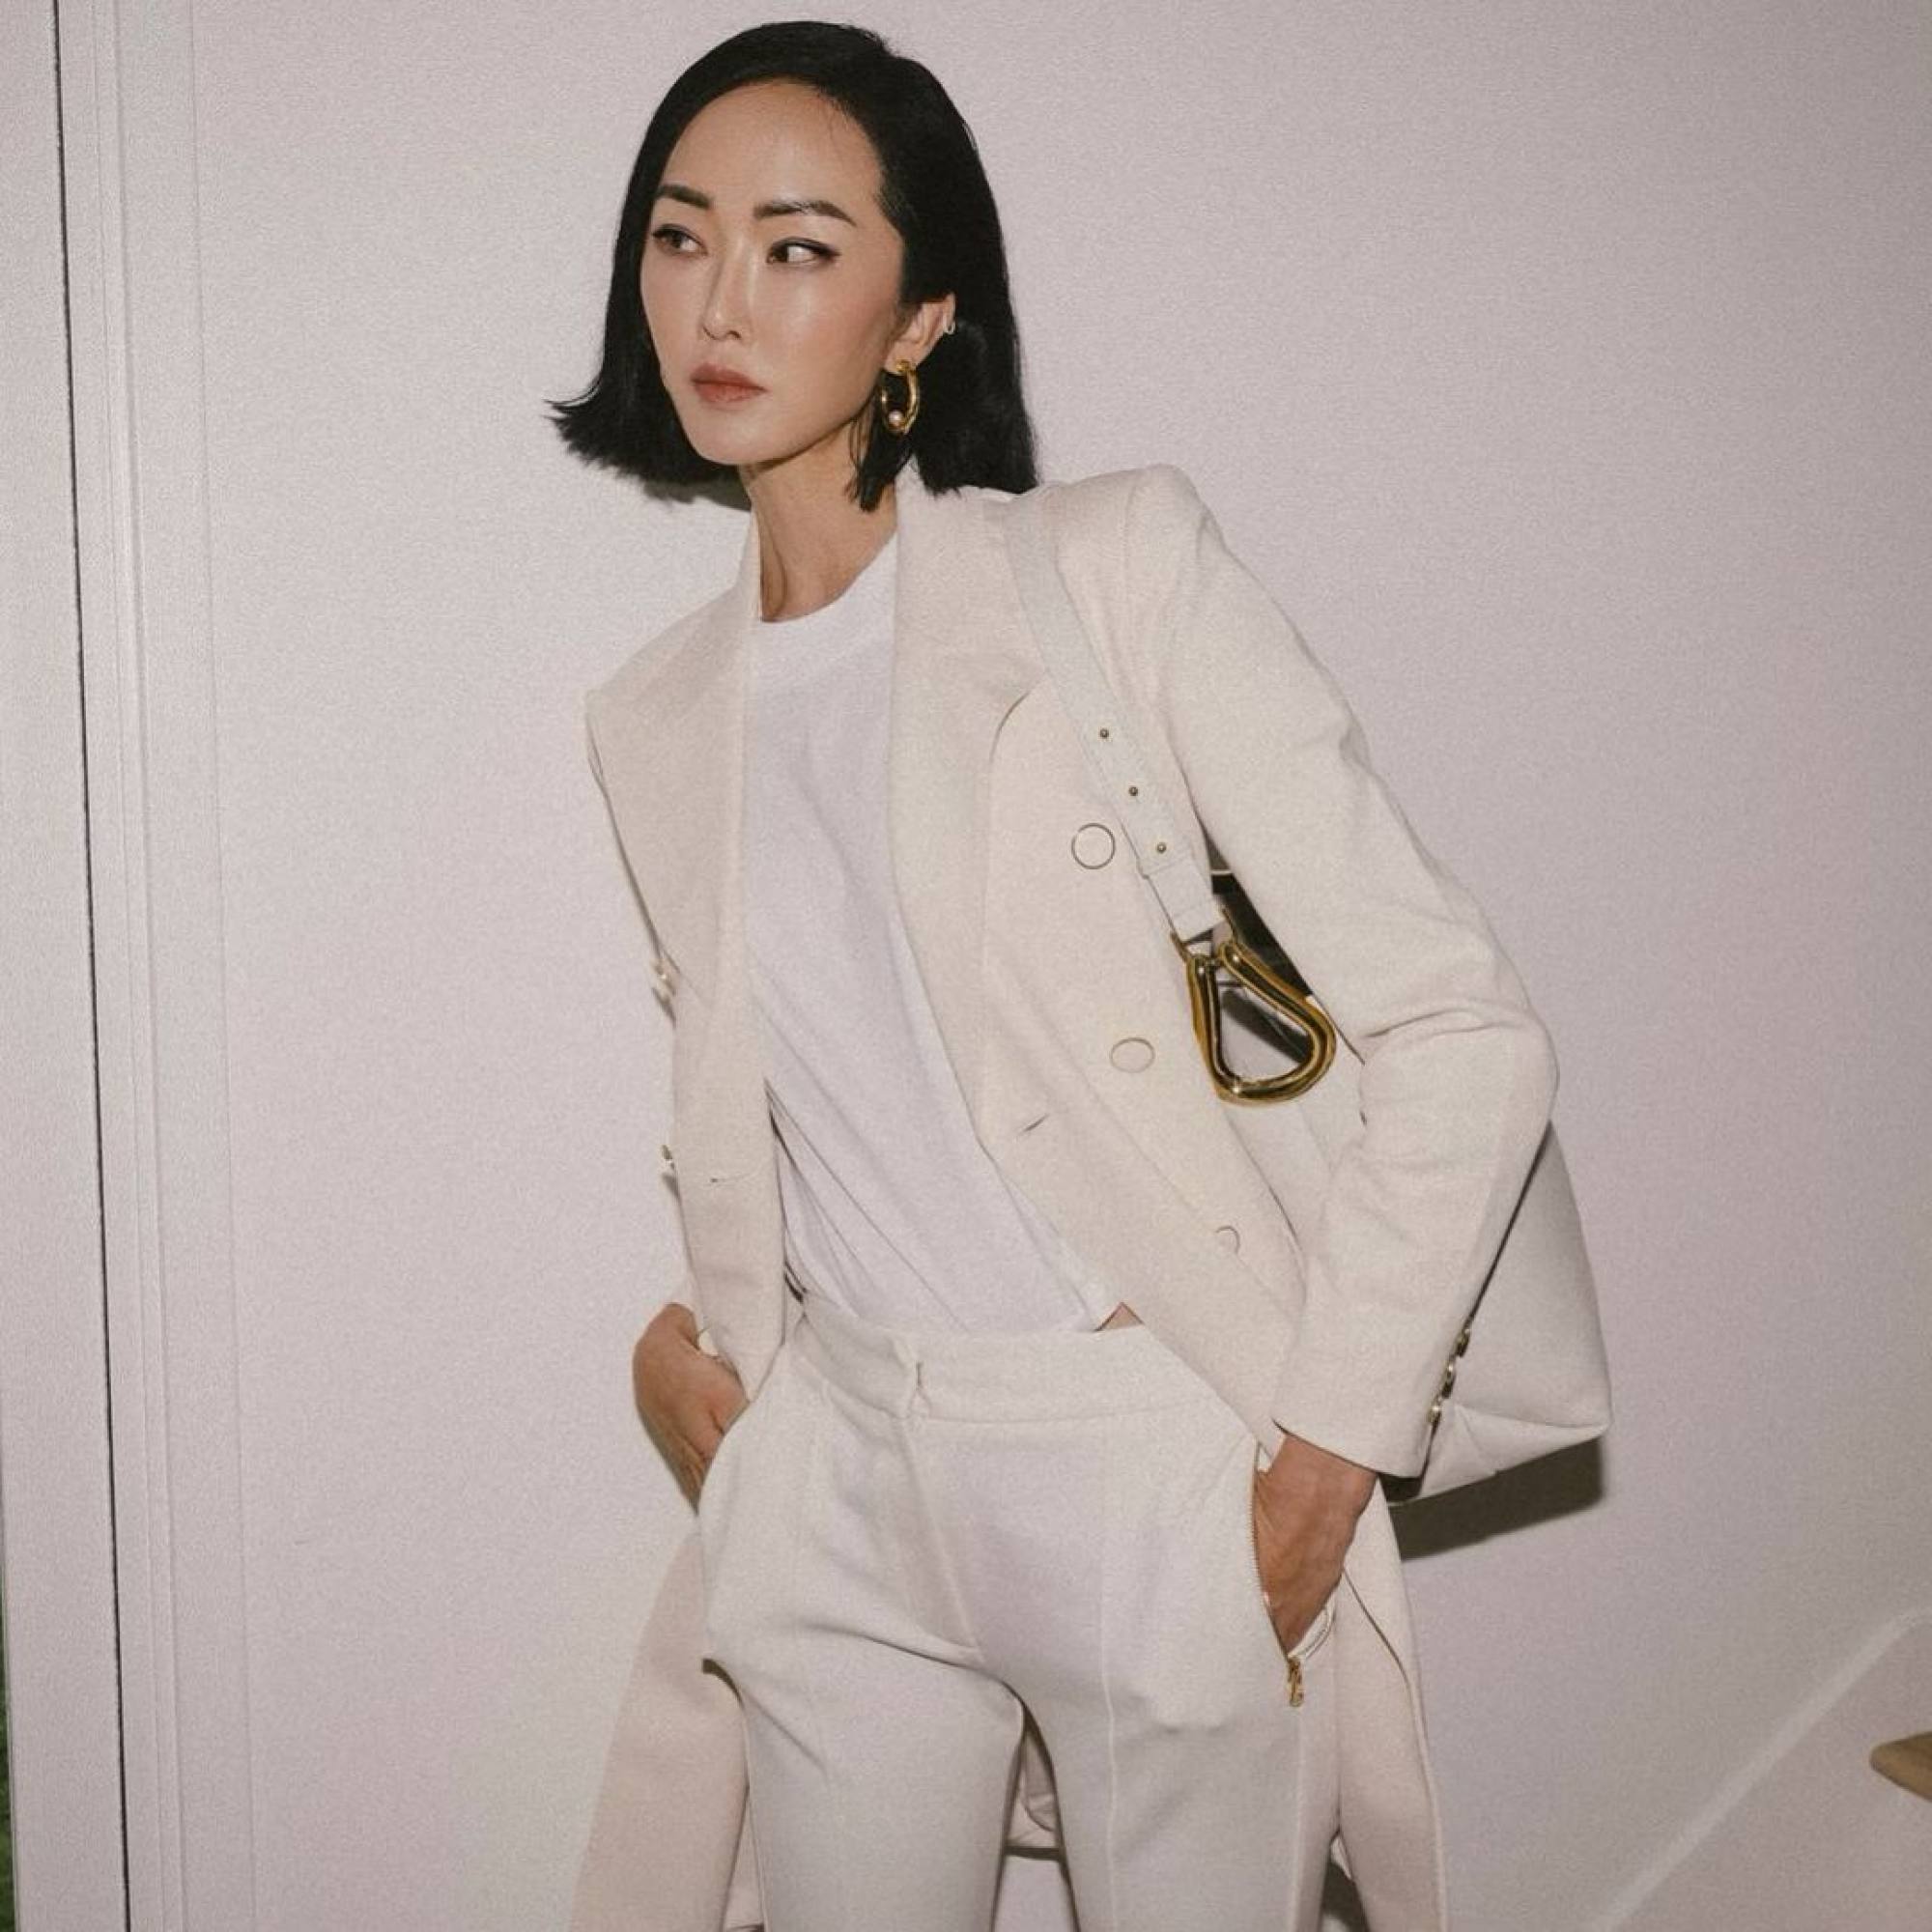 Why Eileen Gu is luxury fashion's dream model - KESQ